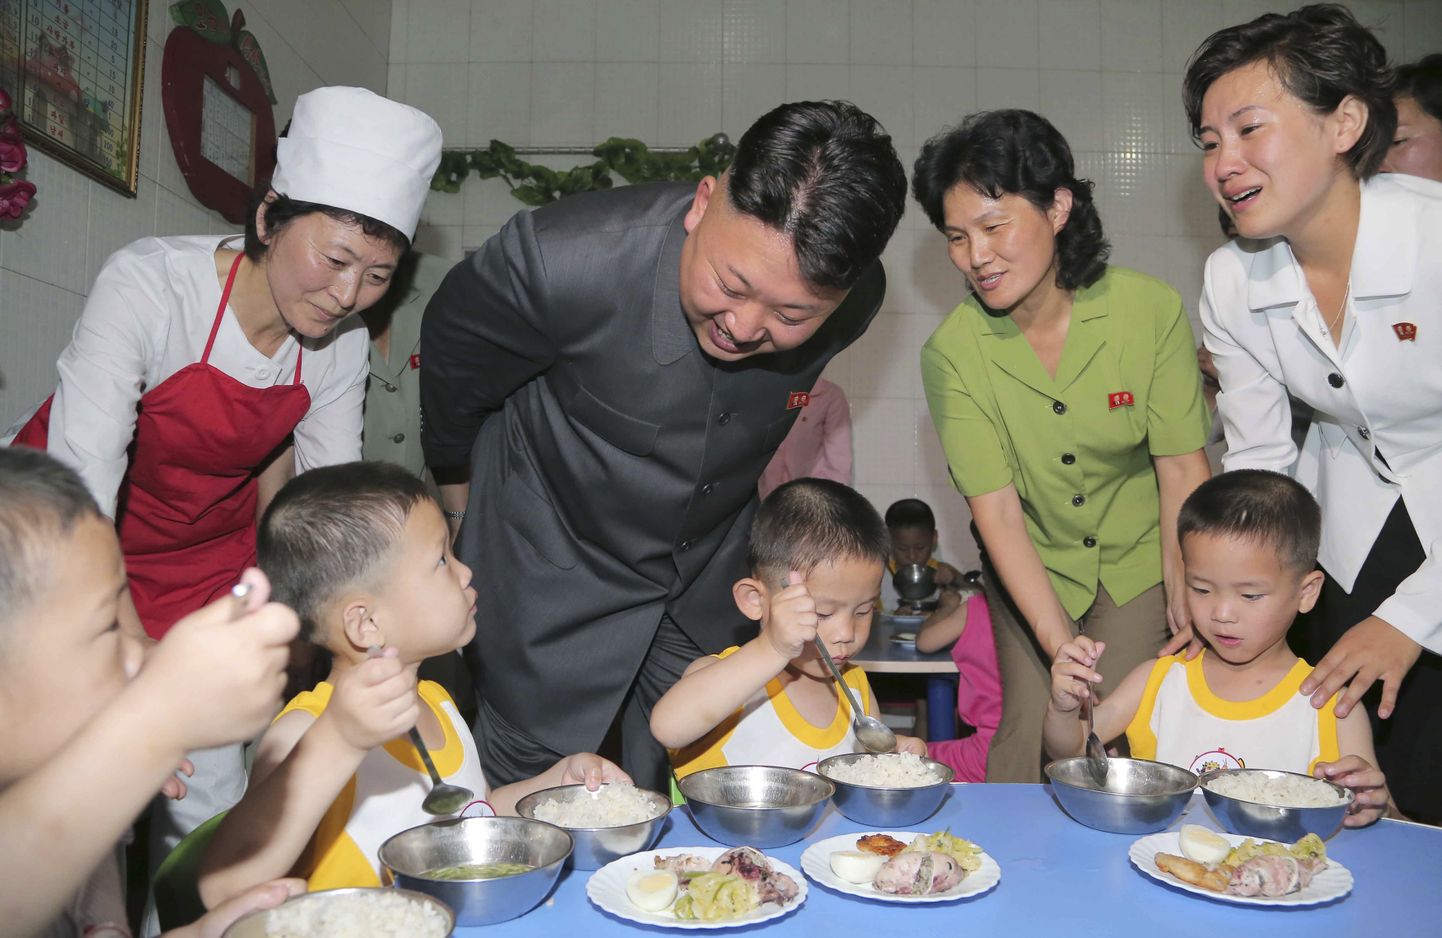 Põhja-Korea liider Kim Jong-un külastab Pyongyangi orbudekodu lapsi. Tõenäoliselt näevad need lapsed nõnda palju sööki vaid selle fotosessiooni ja külastuse tarbeks, ülejäänud ajal on nende toidulaud palju kesisem.